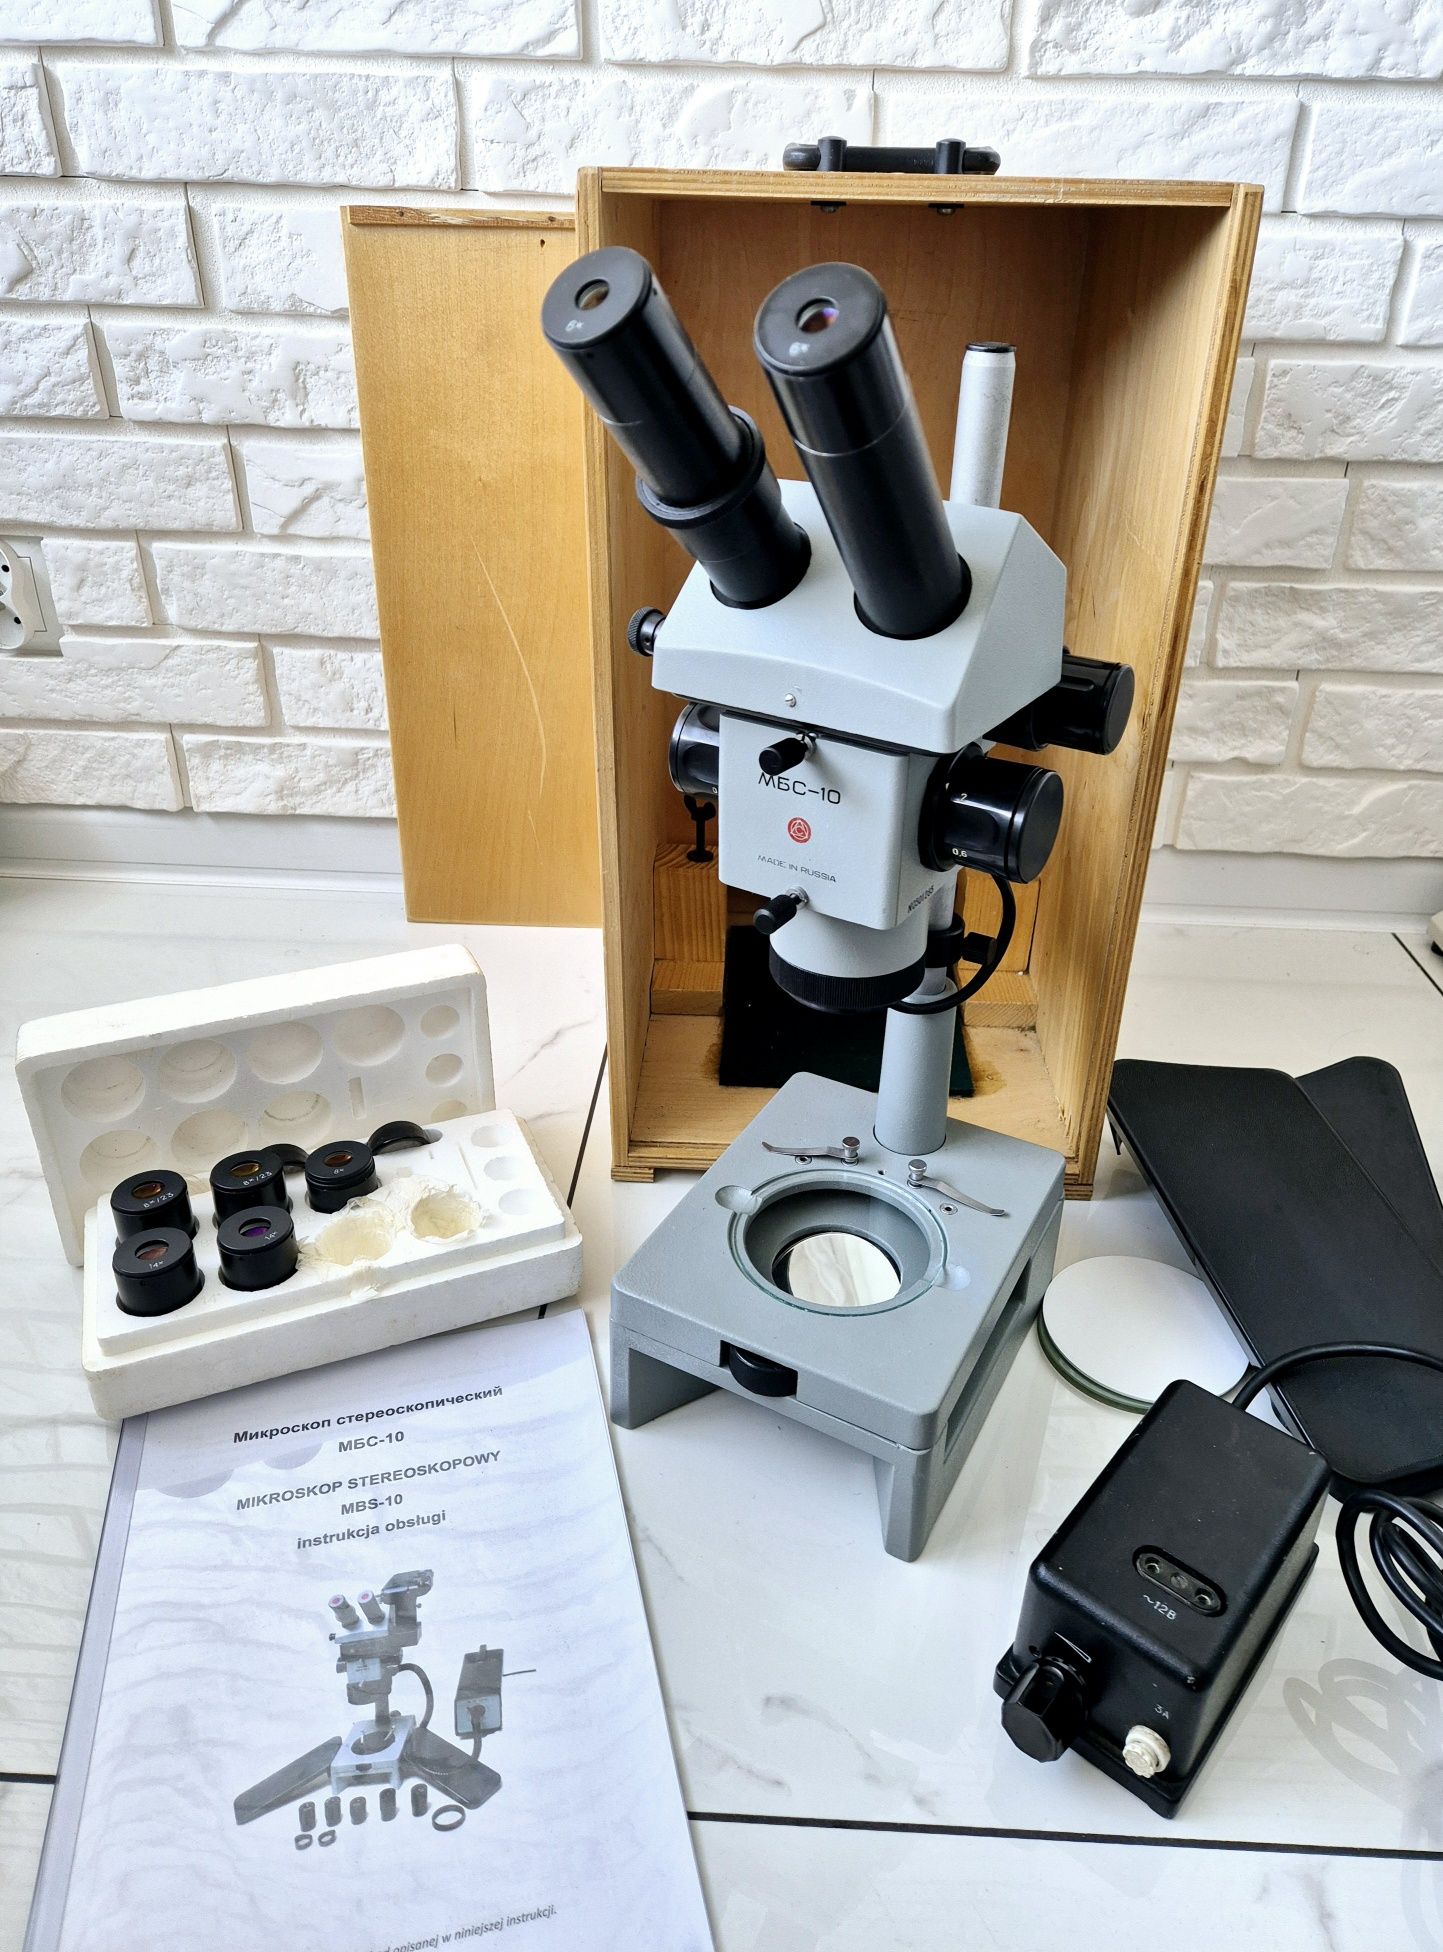 Mikroskop stereoskopowy mbs 10 ideal